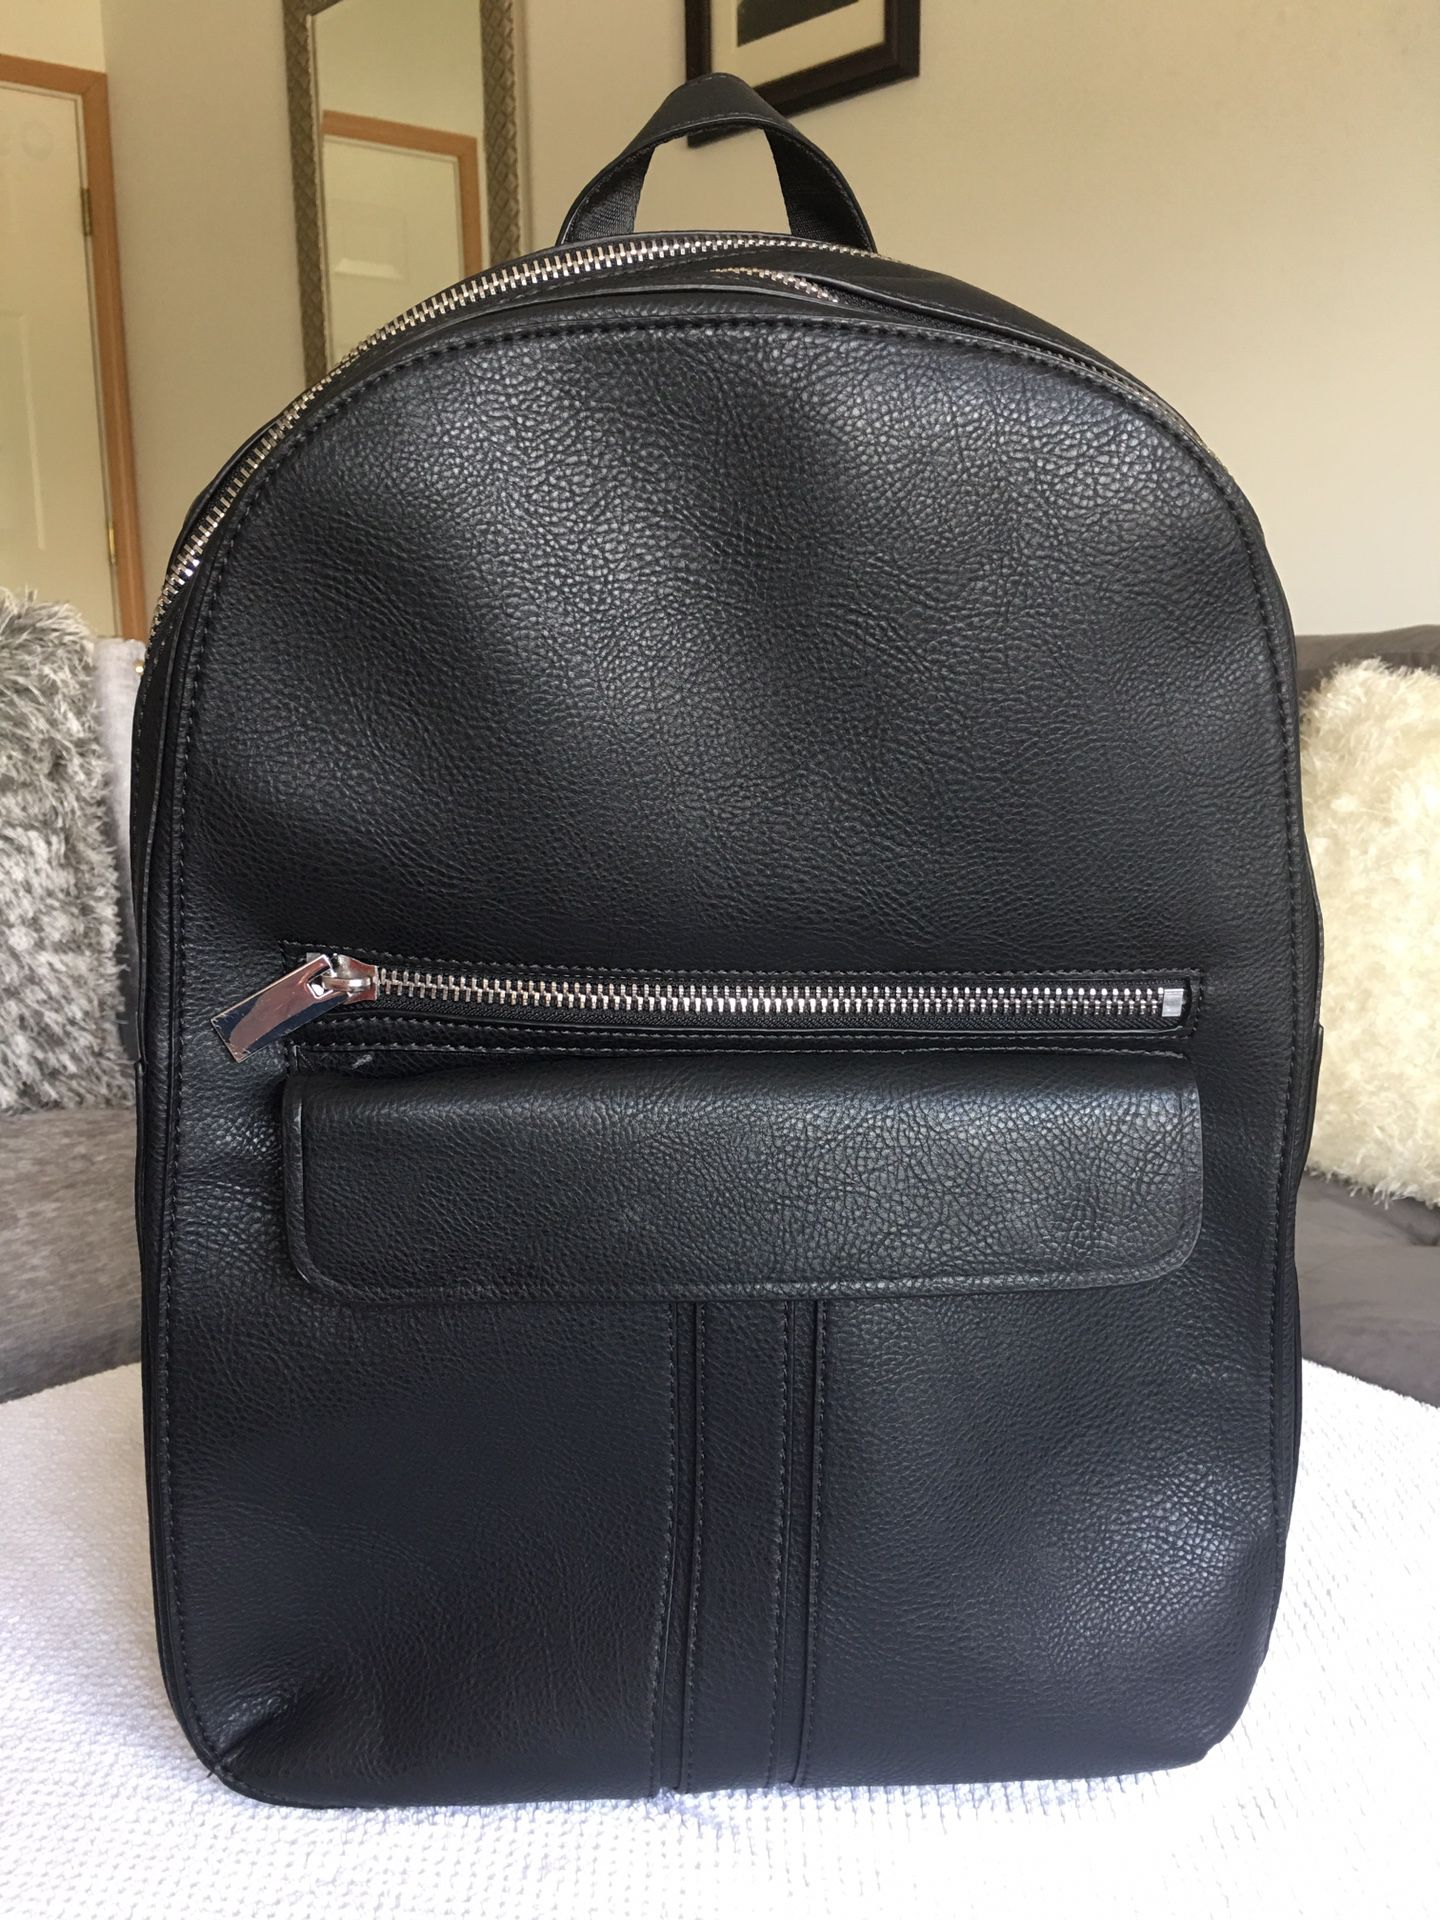 Zara Backpack Black Leather New